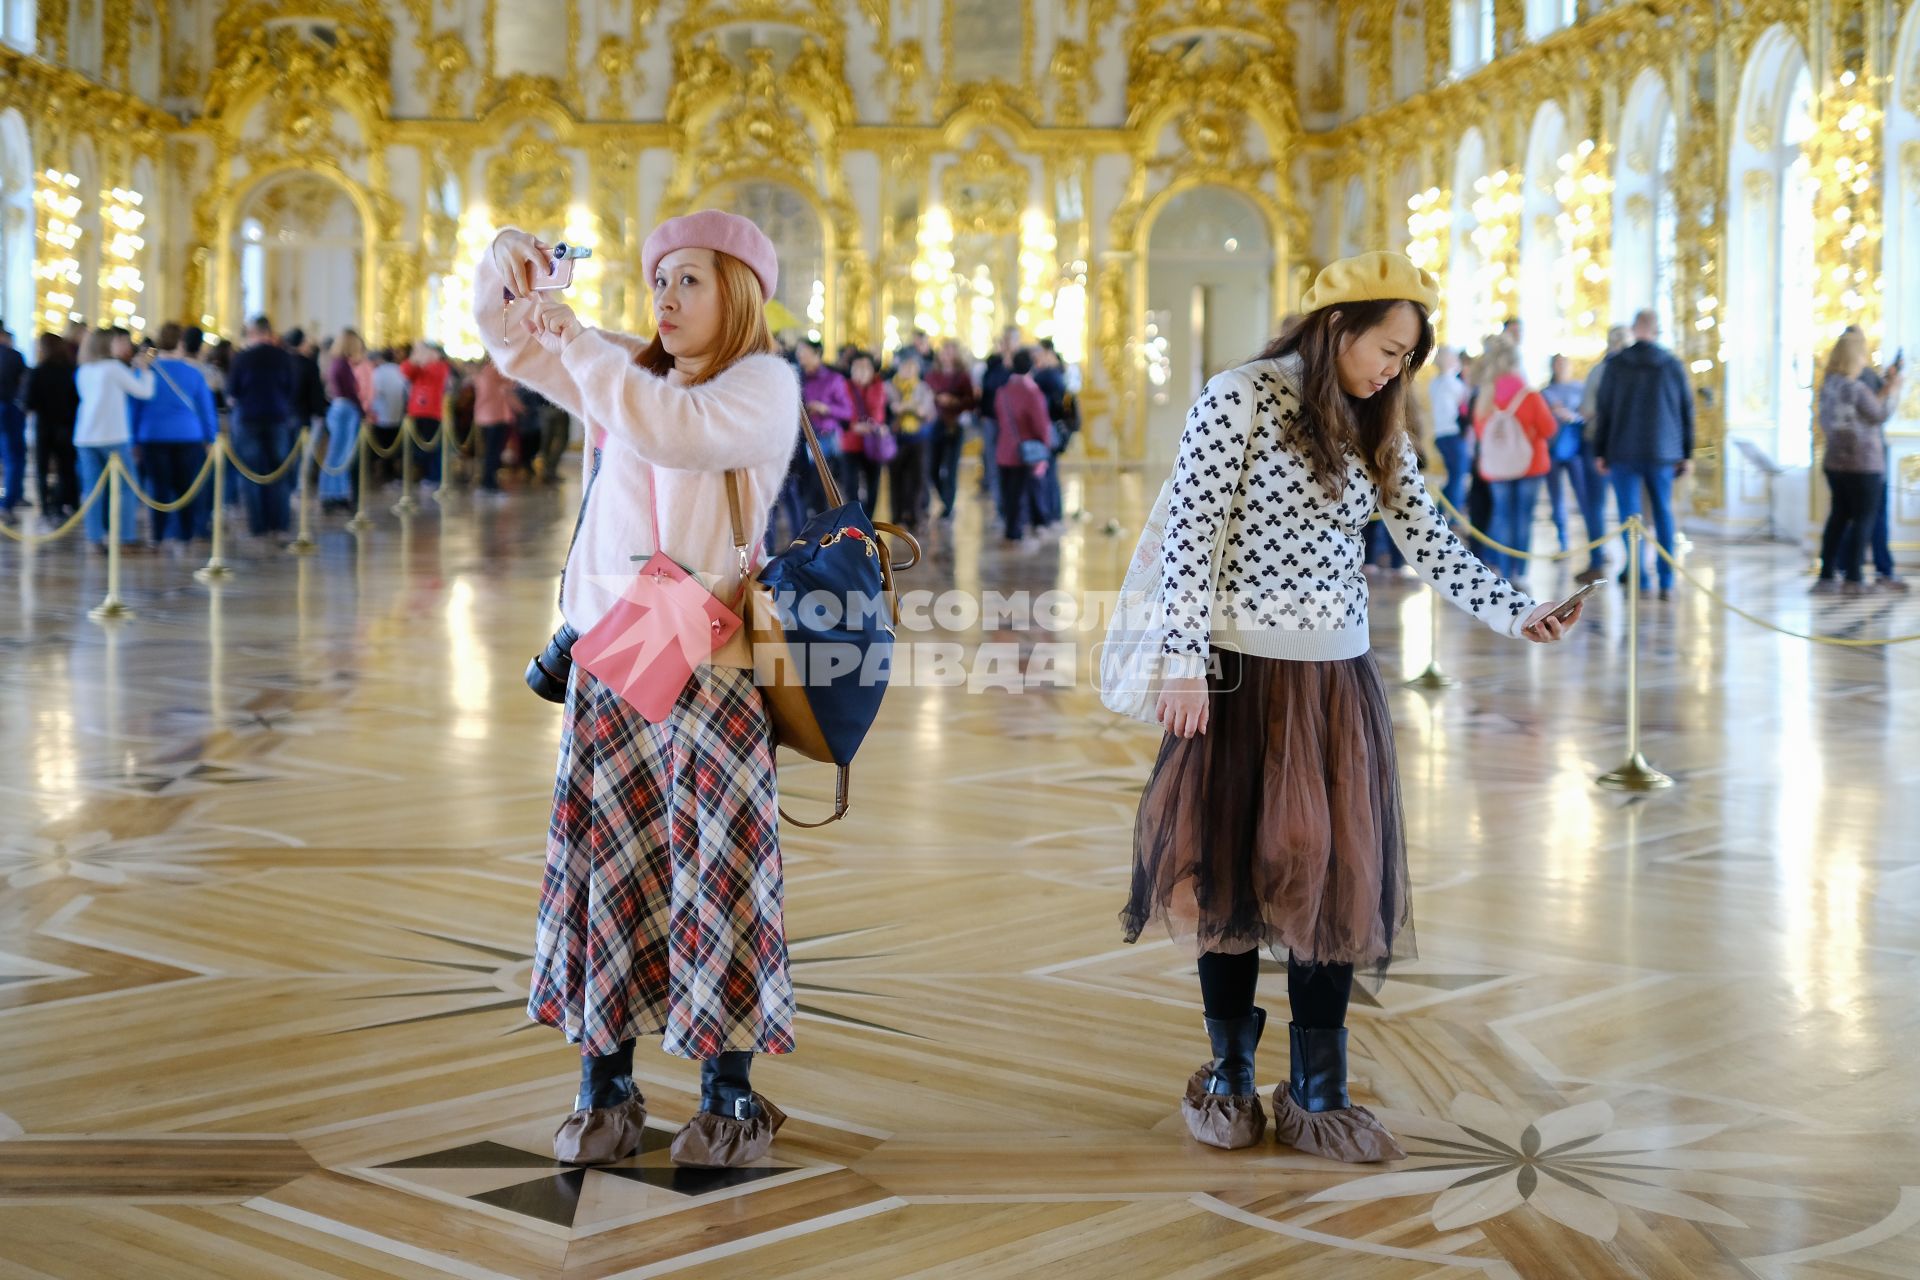 Санкт-Петербург.  Туристы из Китая фотографируются в  музее.